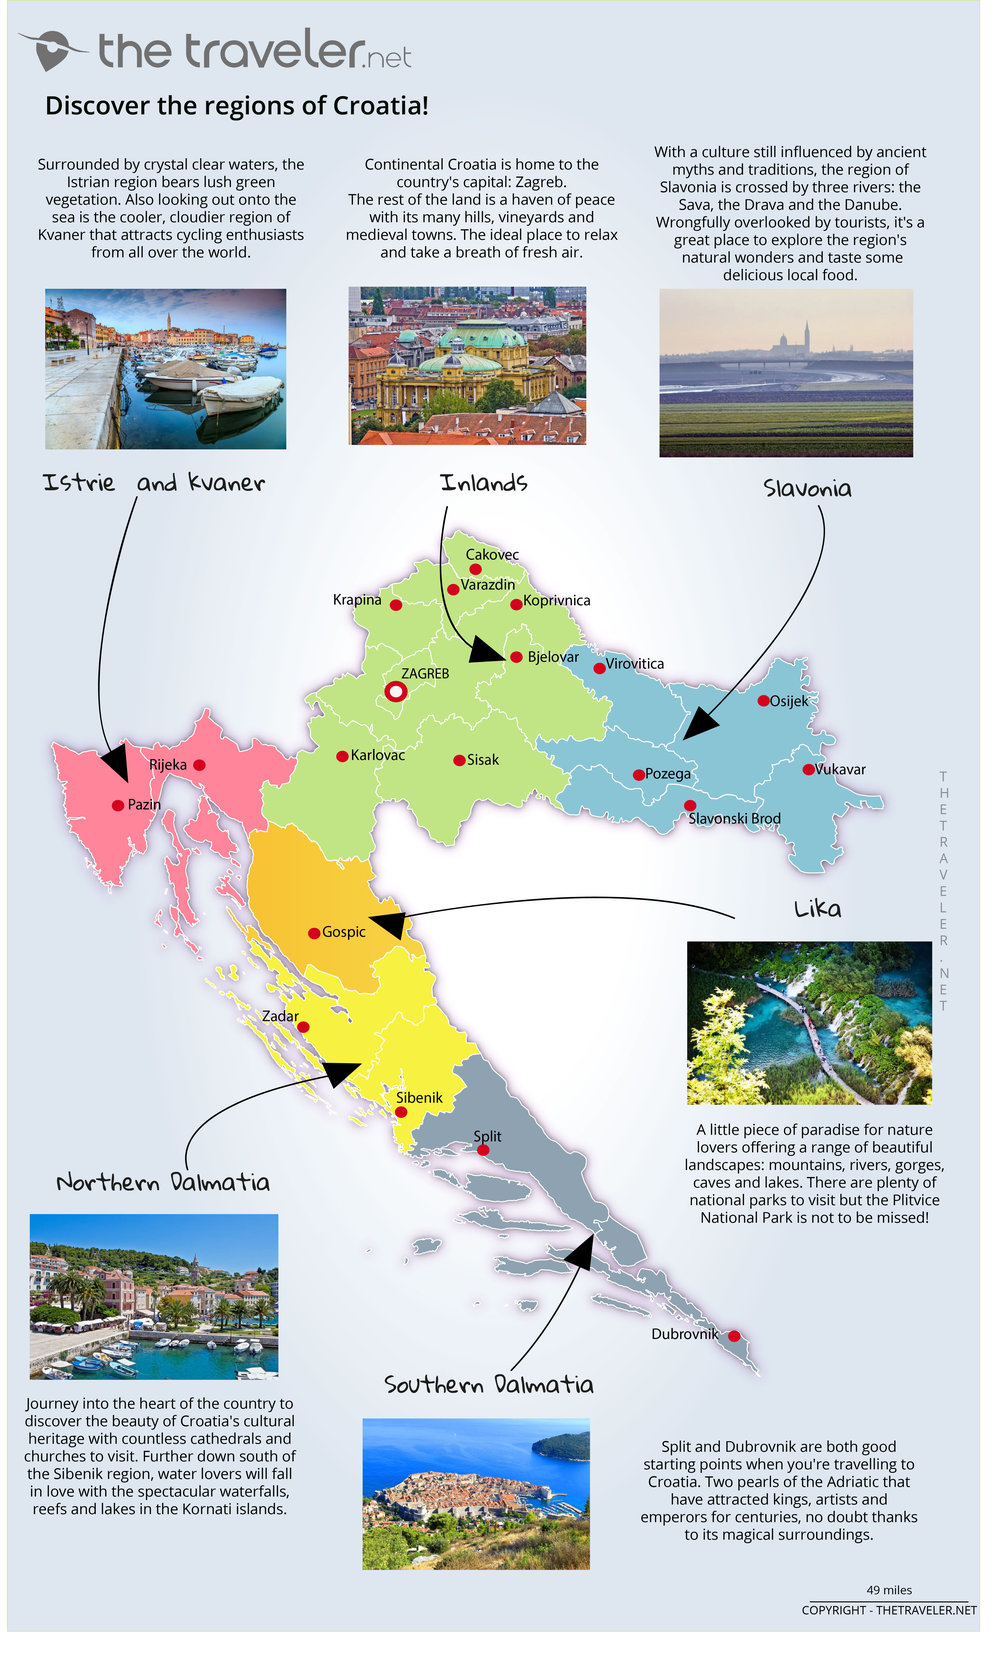 croatia tourist requirements